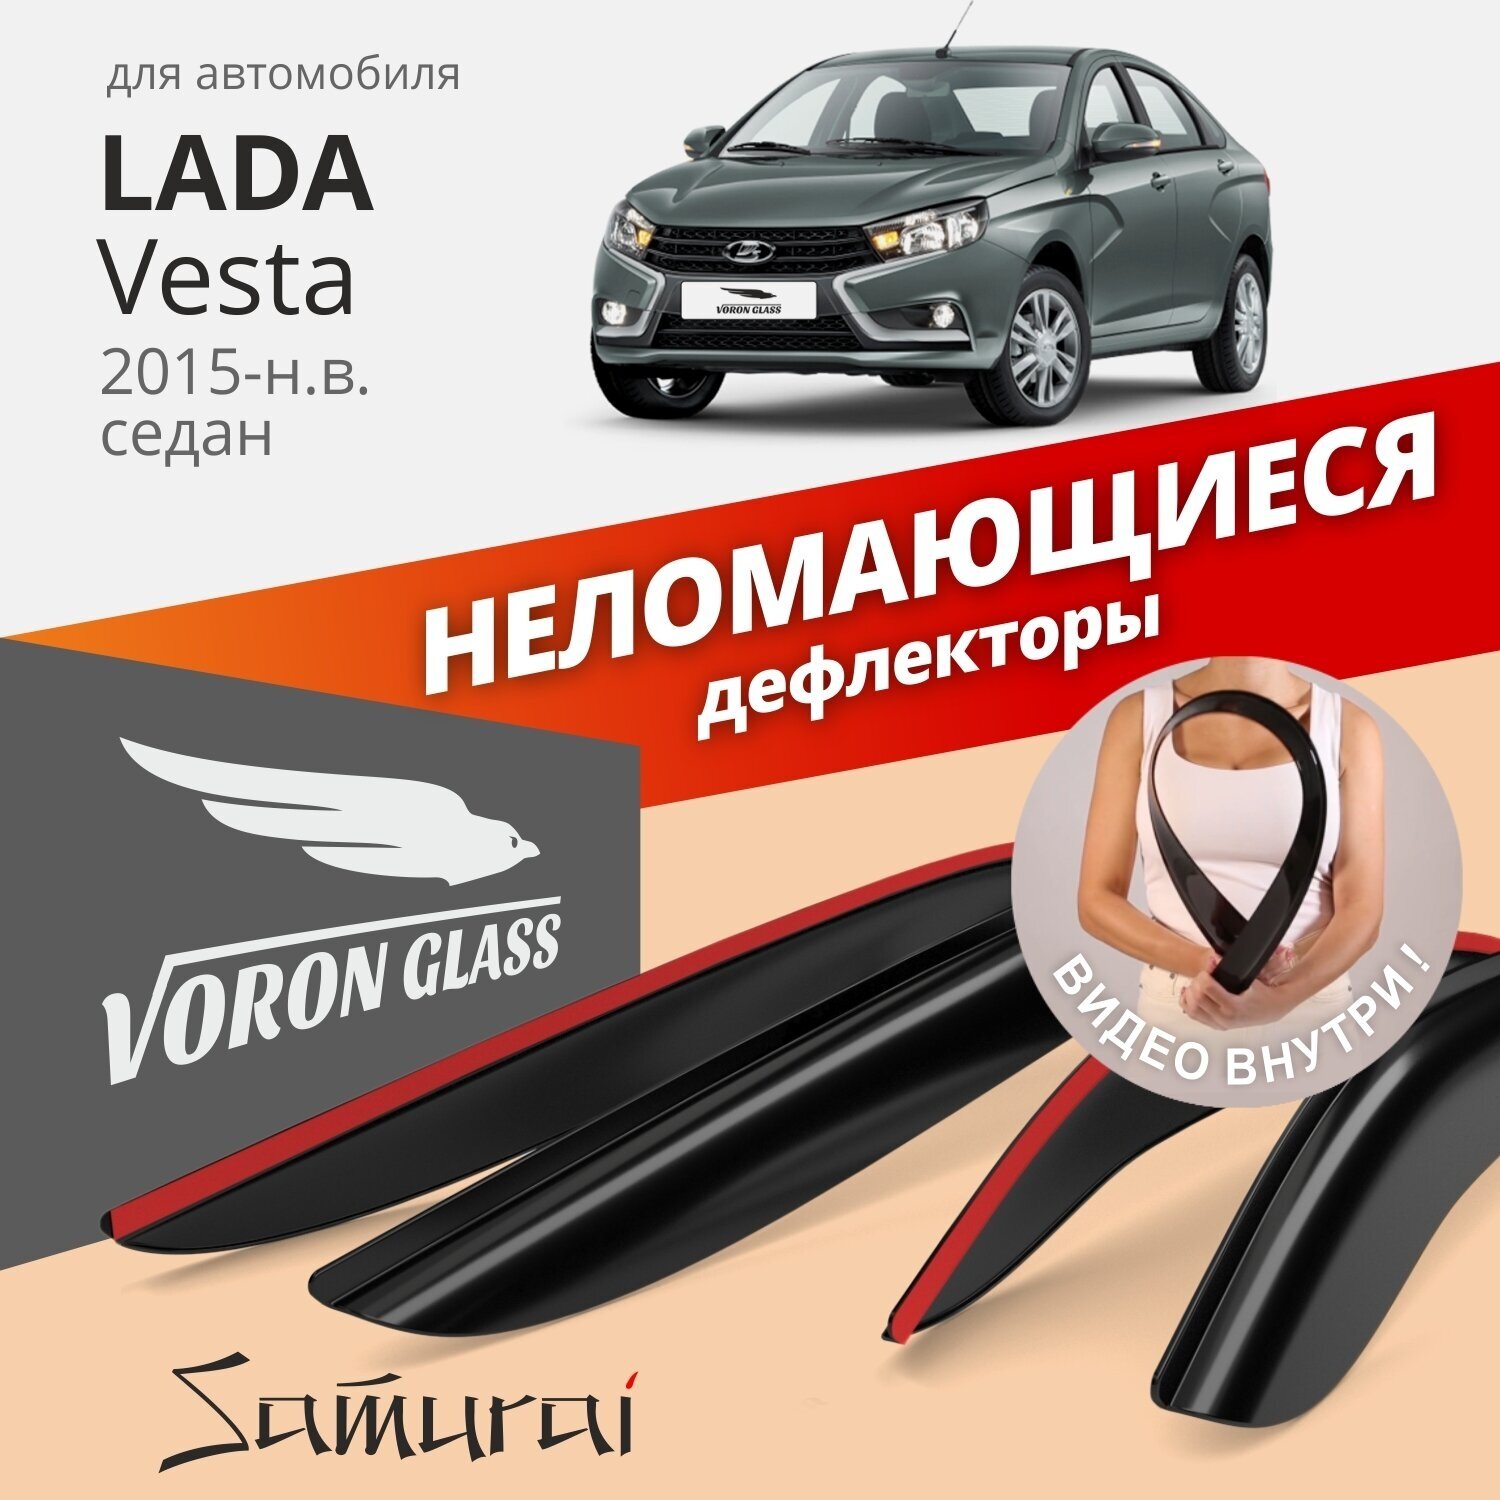 Дефлекторы окон неломающиеся Voron Glass серия Samurai для Lada Vesta 2015-н. в. седан накладные 4 шт.